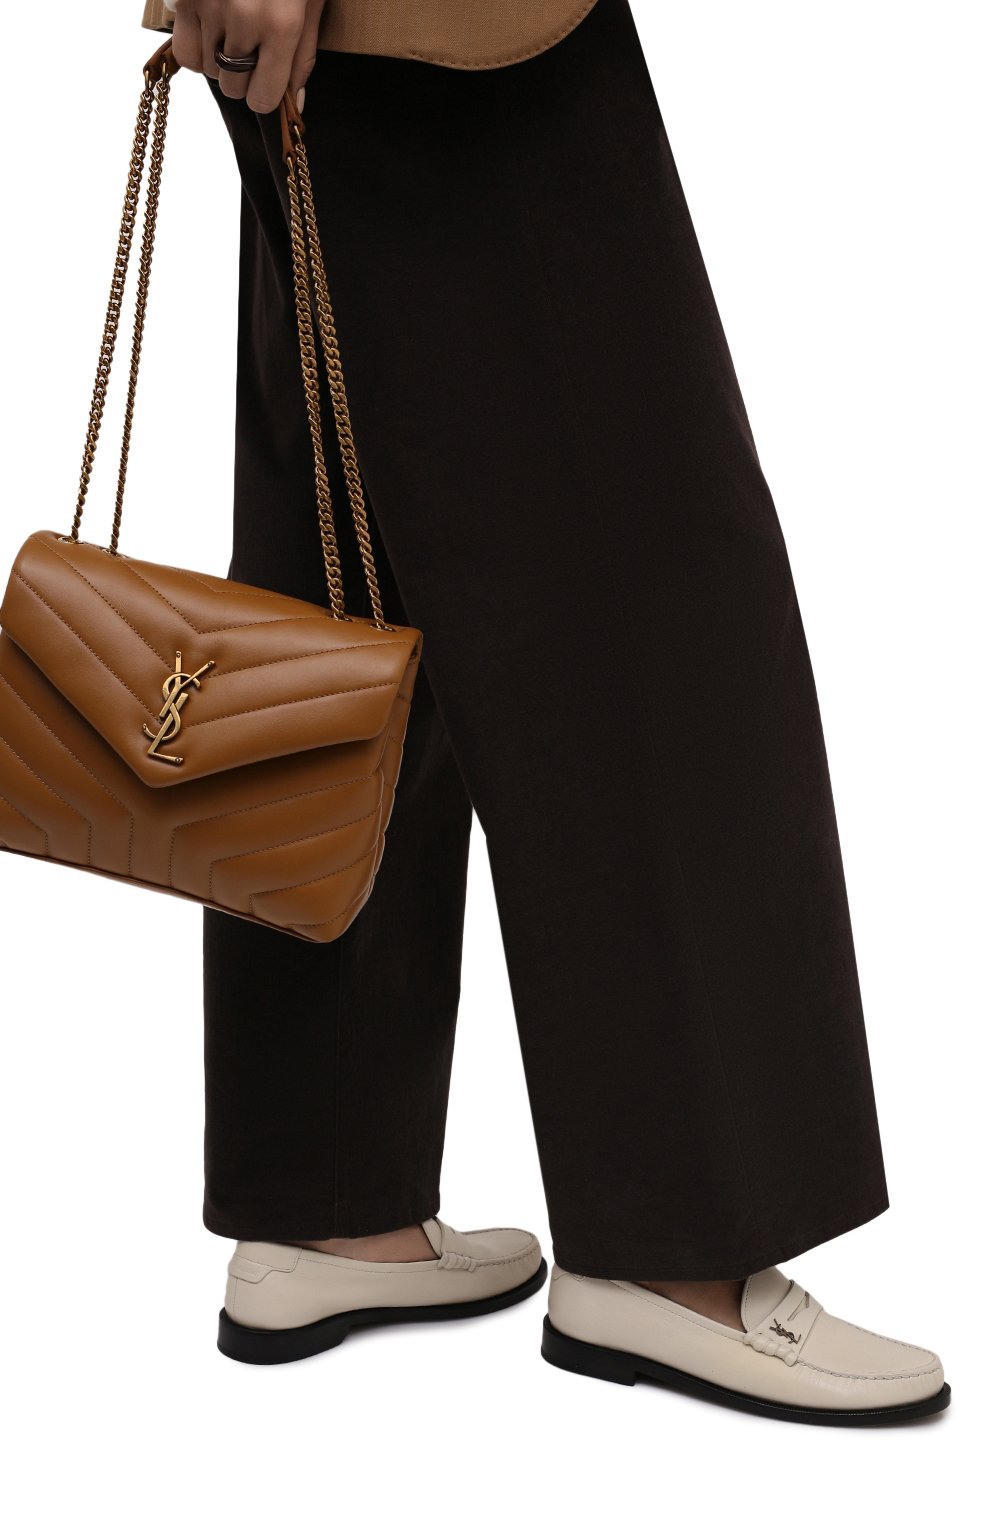 Женские кожаные лоферы SAINT LAURENT кремвого цвета, арт. 670232/18RTT | Фото 3 (Каблук высота: Низкий; Материал внутренний: Нату ральная кожа; Подошва: Плоская)